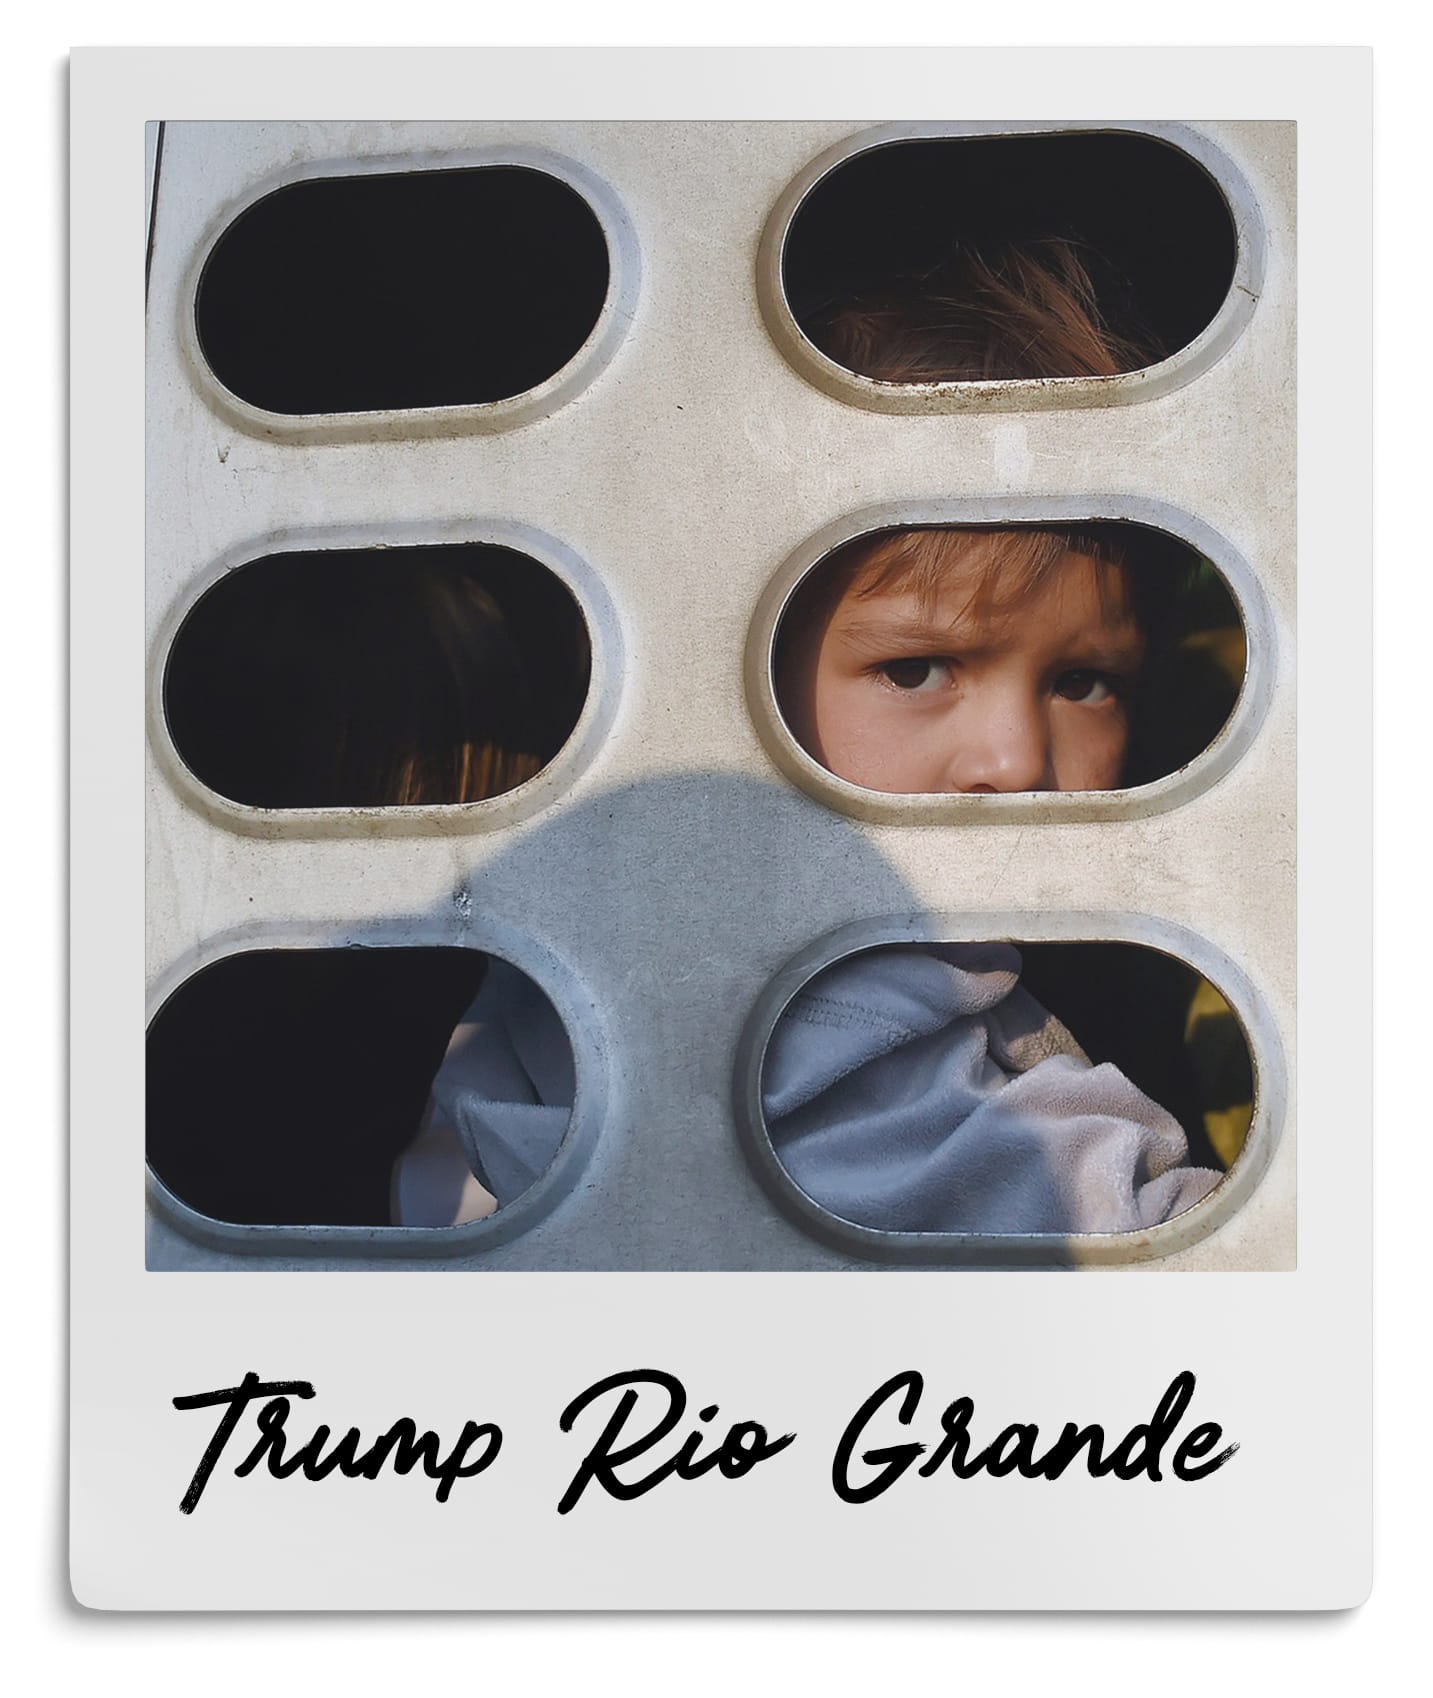 Trump Rio Grande